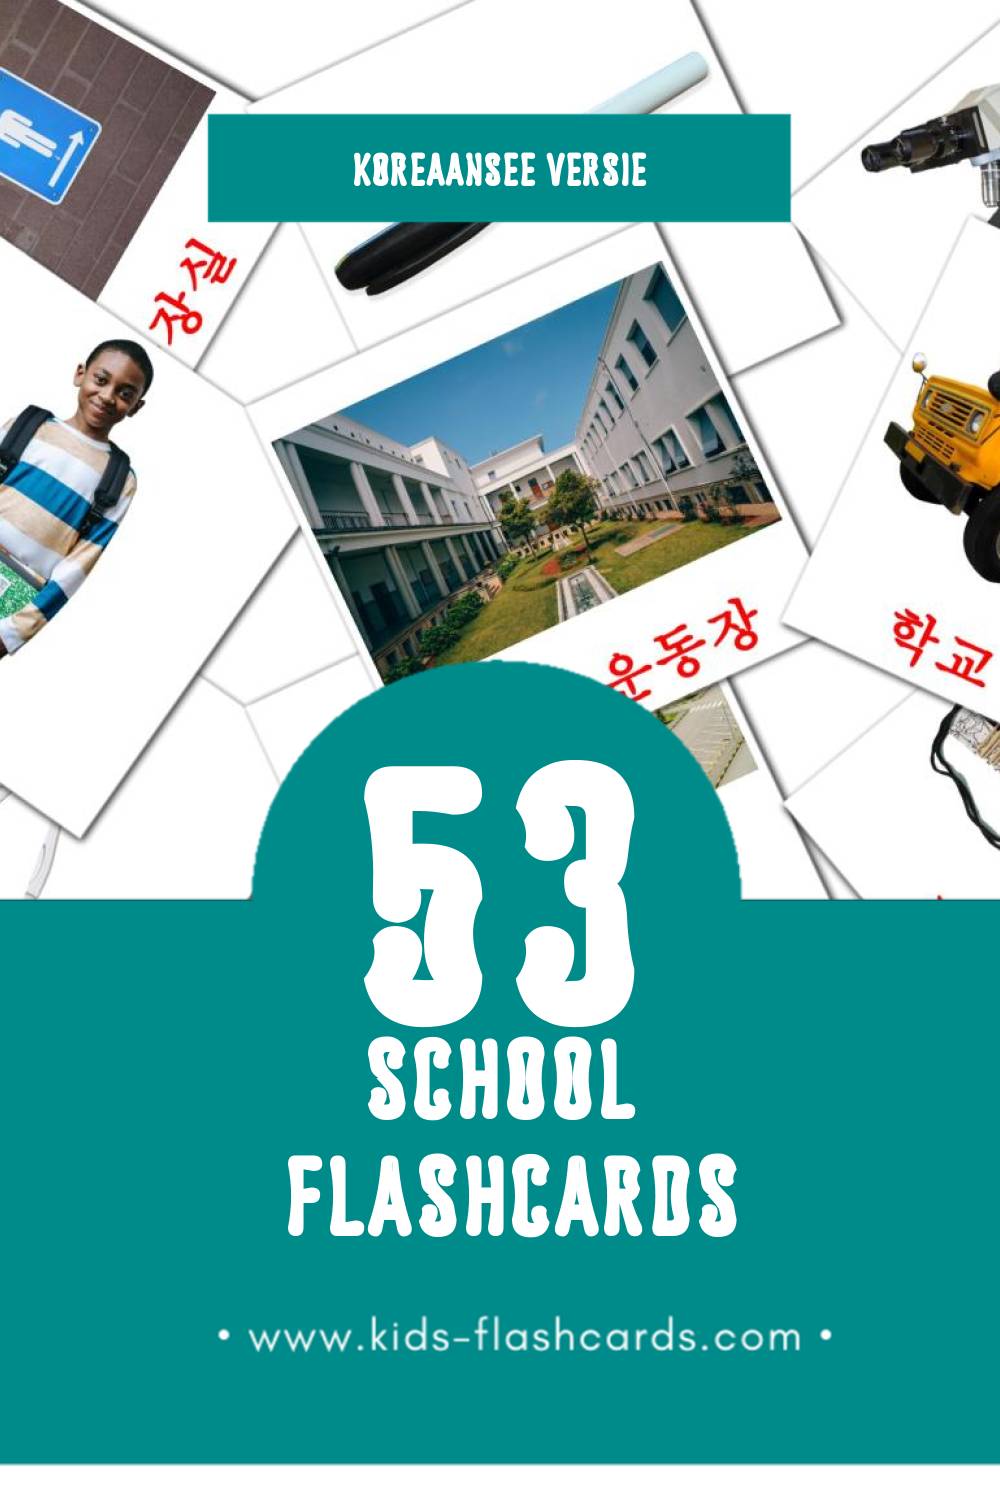 Visuele 학교 장소 Flashcards voor Kleuters (53 kaarten in het Koreaanse)